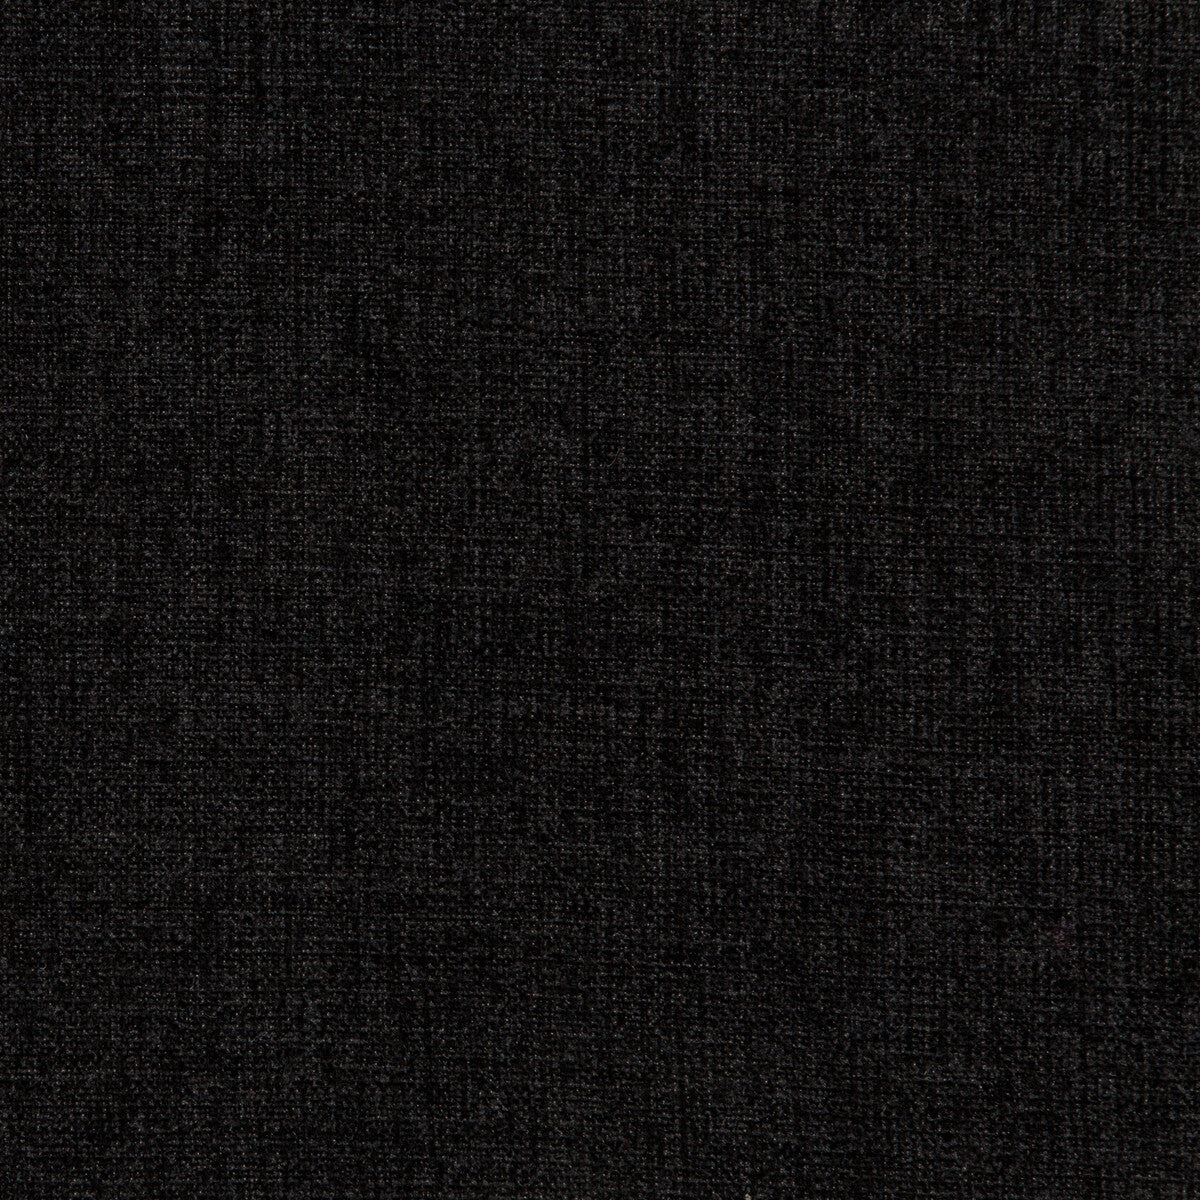 Kravet Basics fabric in 35775-8 color - pattern 35775.8.0 - by Kravet Basics